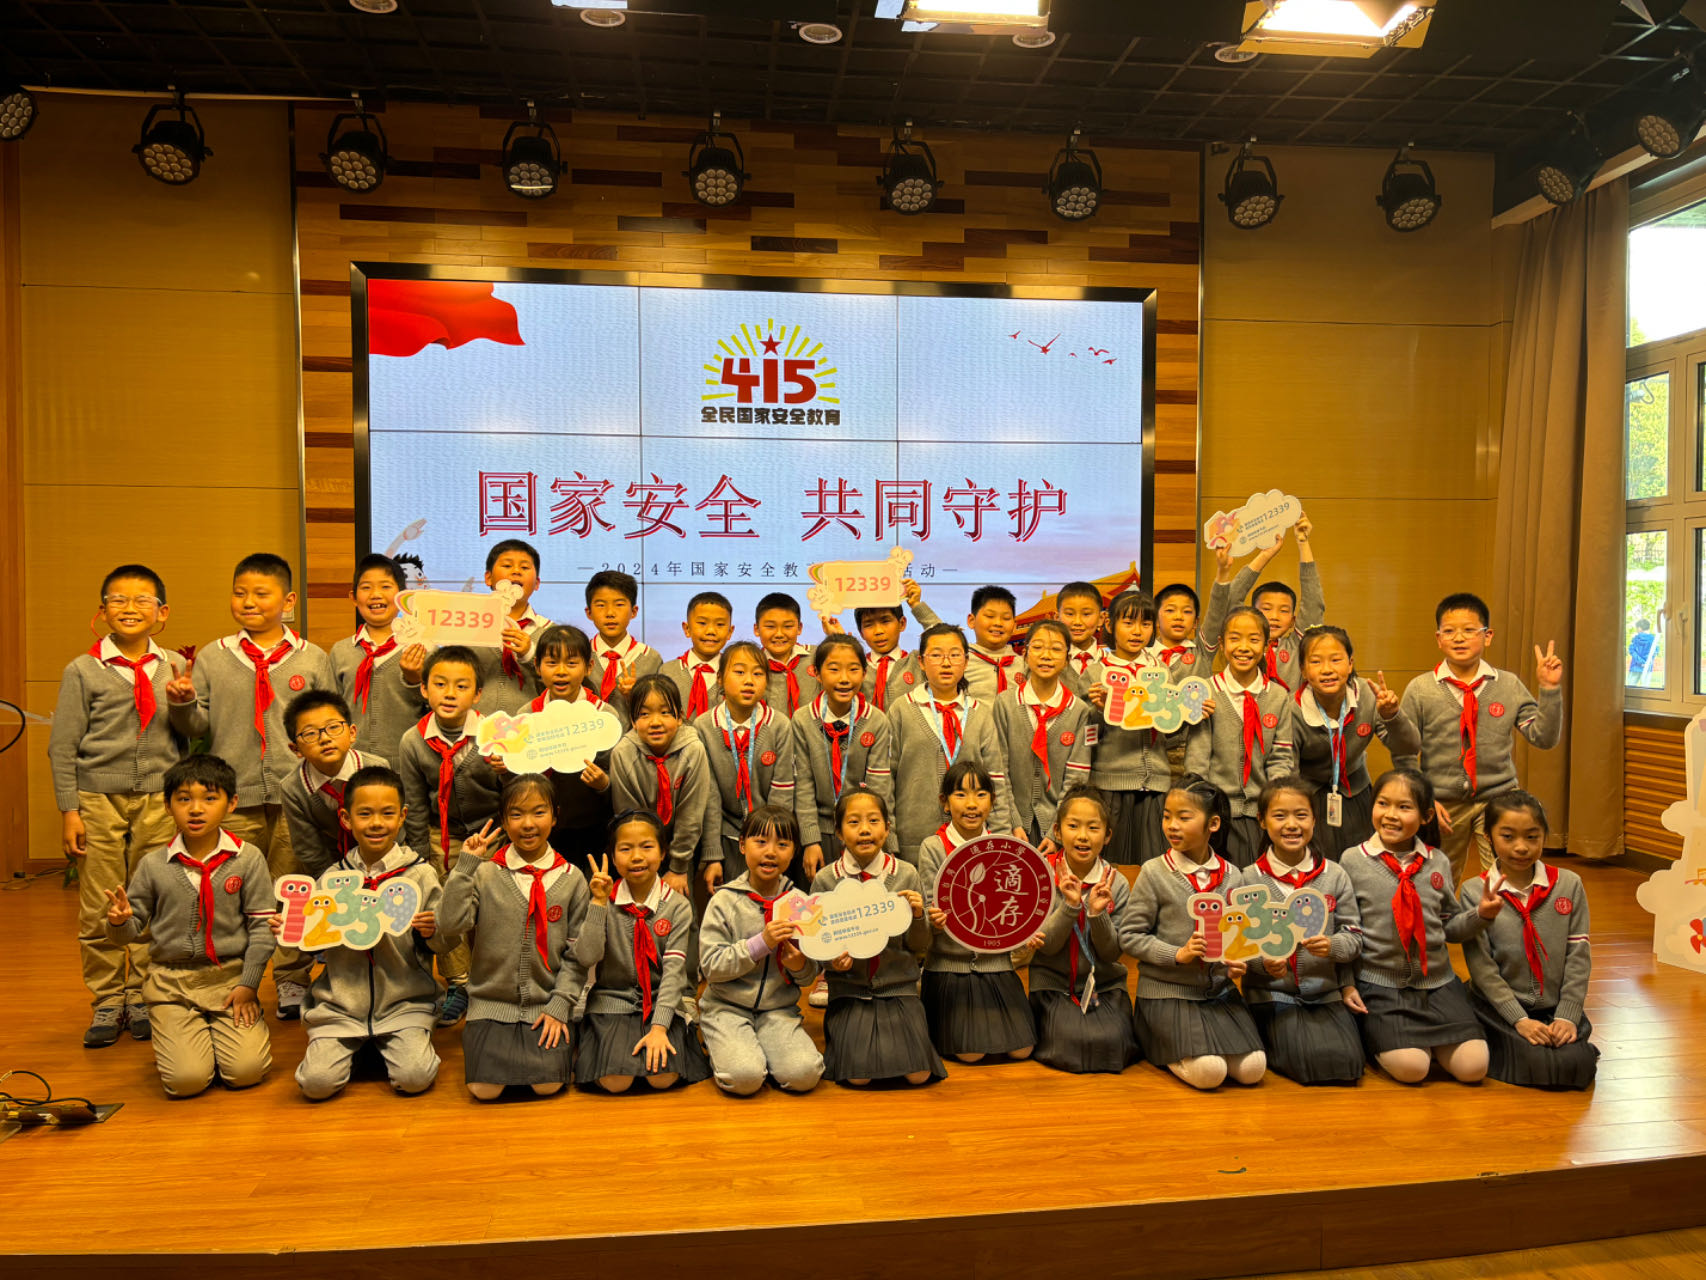 “国家长治久安才能有幸福生活”，国家安全教育活动走进上海中小学